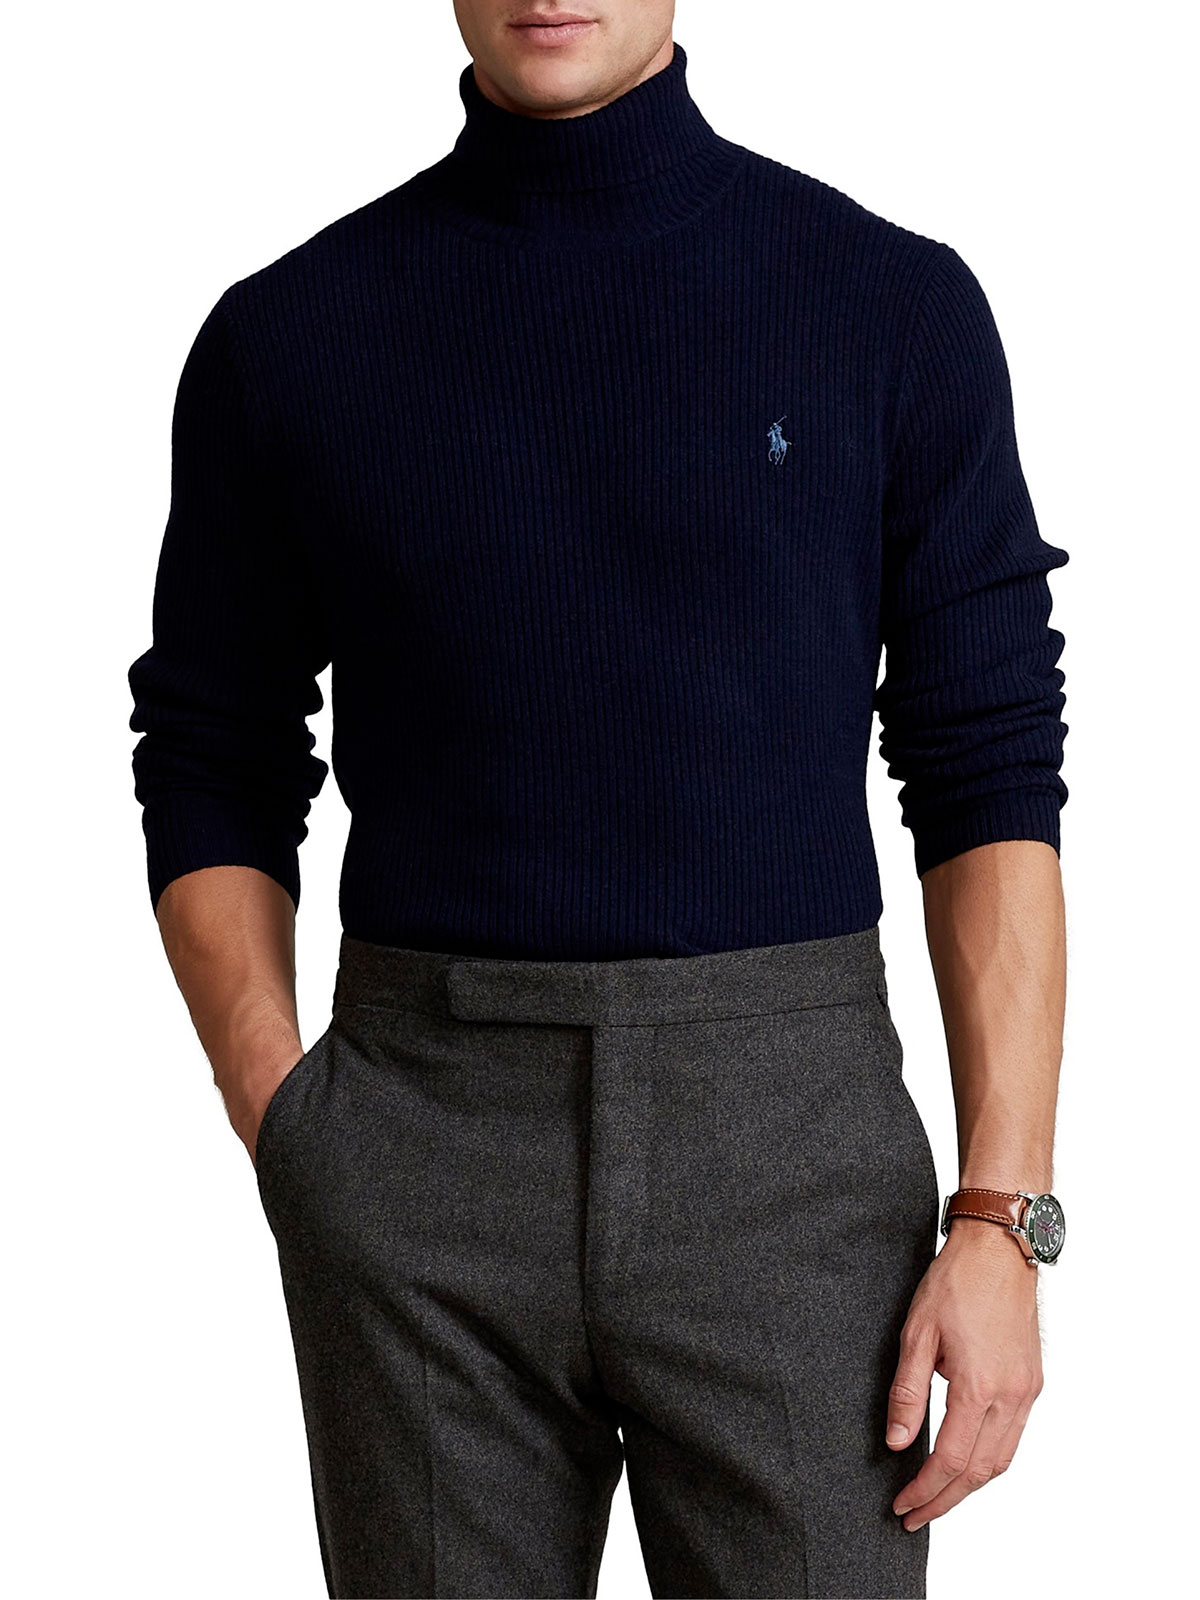 POLO RALPH LAUREN Men's Merino Turtleneck Sweater Hunter Navy |  710810838002 | Botta & B Online Store